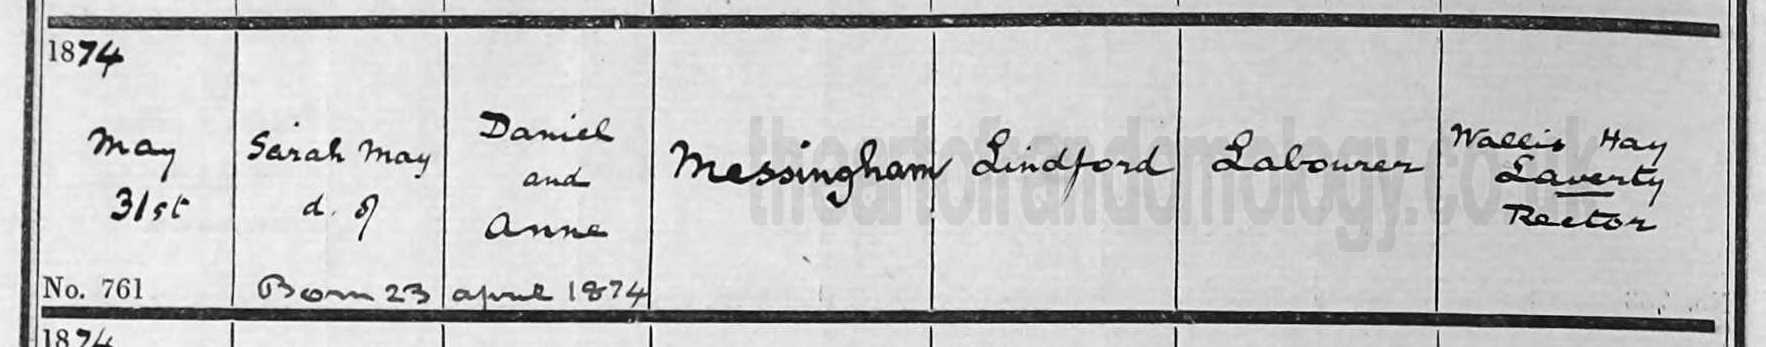 Sarah May Messingham baptism 1874